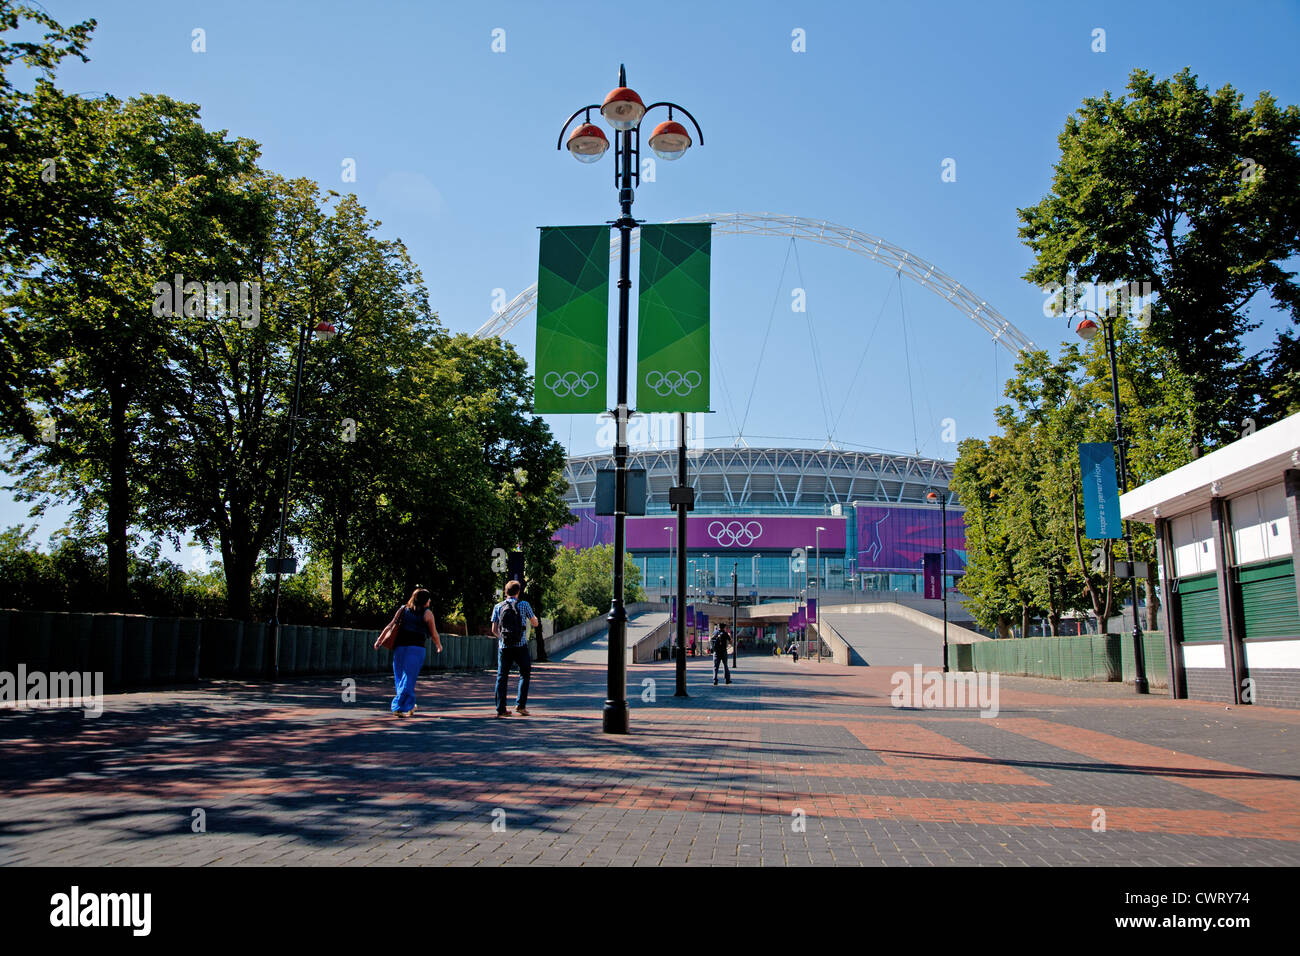 Le stade de Wembley de Wembley, vu de façon montrant 2012 anneaux olympiques, Londres, Angleterre, Royaume-Uni Banque D'Images